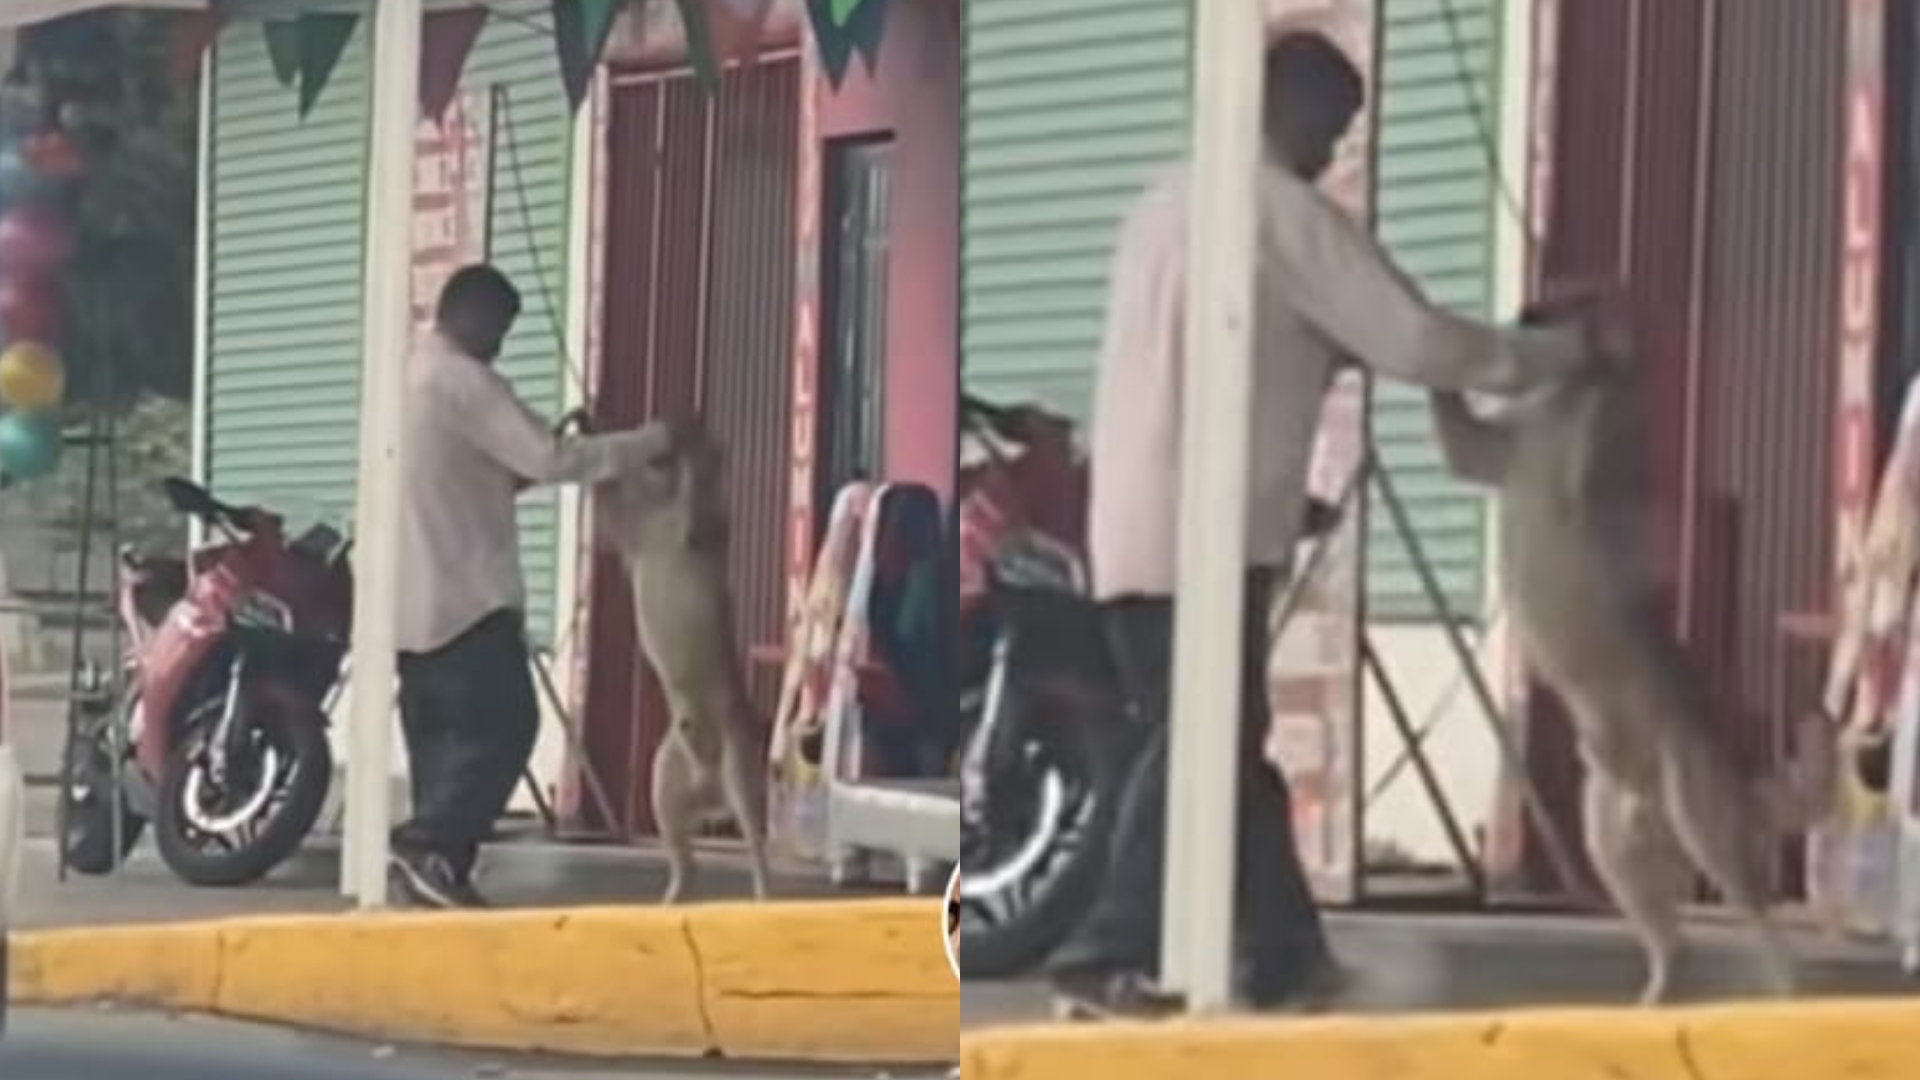 La mejor pareja”: señor se viraliza en TikTok por bailar cumbias junto a su  perrito en el Edomex - Infobae